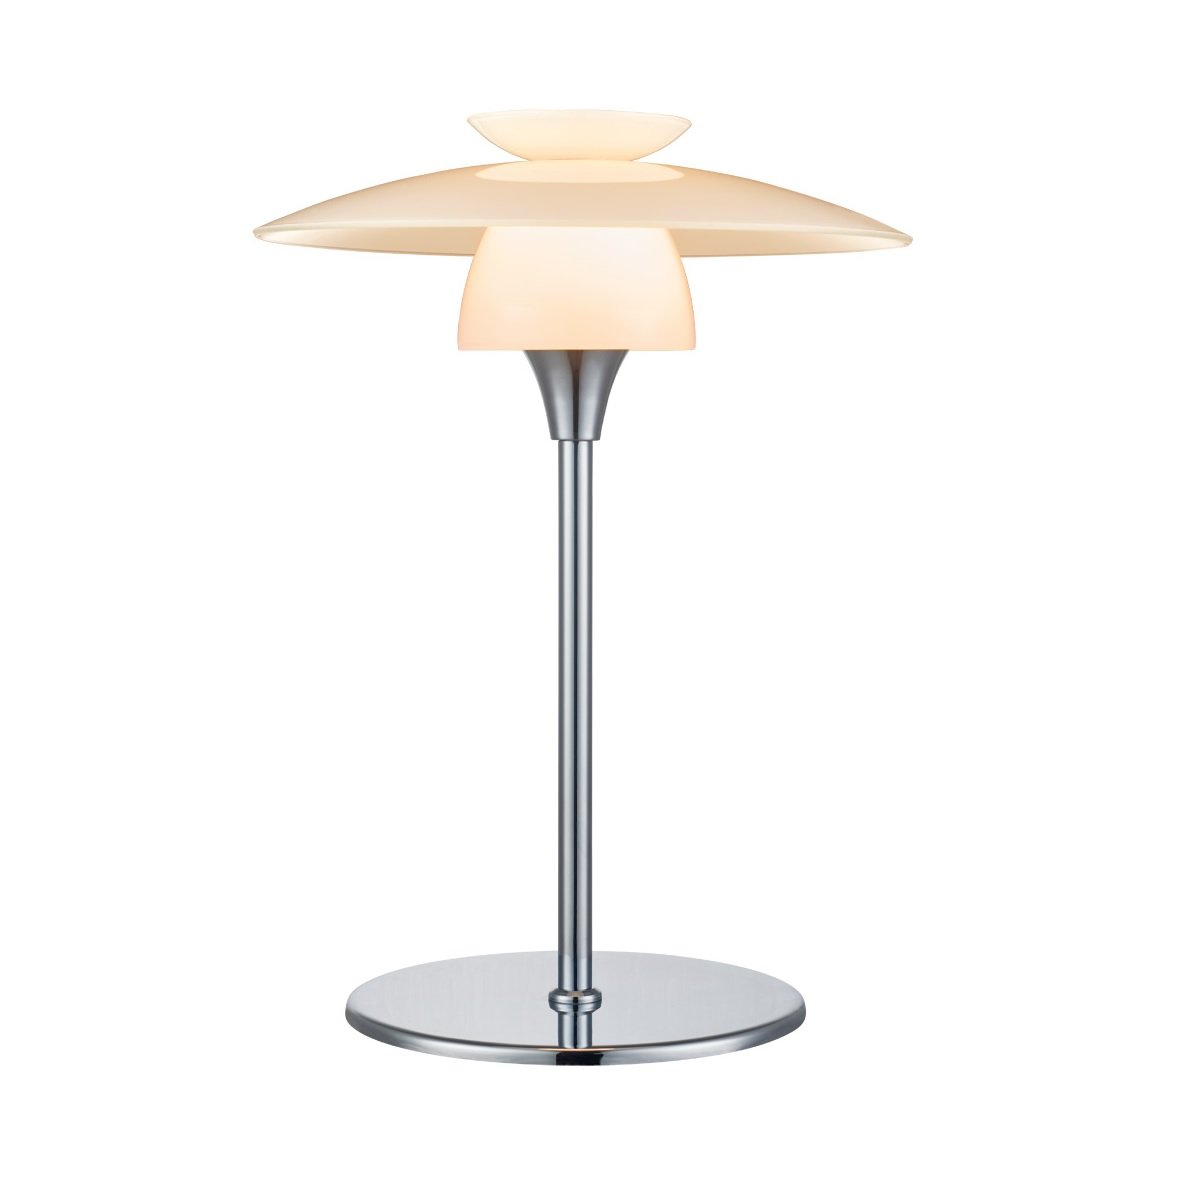 Halo Design No. 733675 Tischleuchte Scandinavia Opal Chrom Ø 20cm -->  Leuchten & Lampen online kaufen im Shop